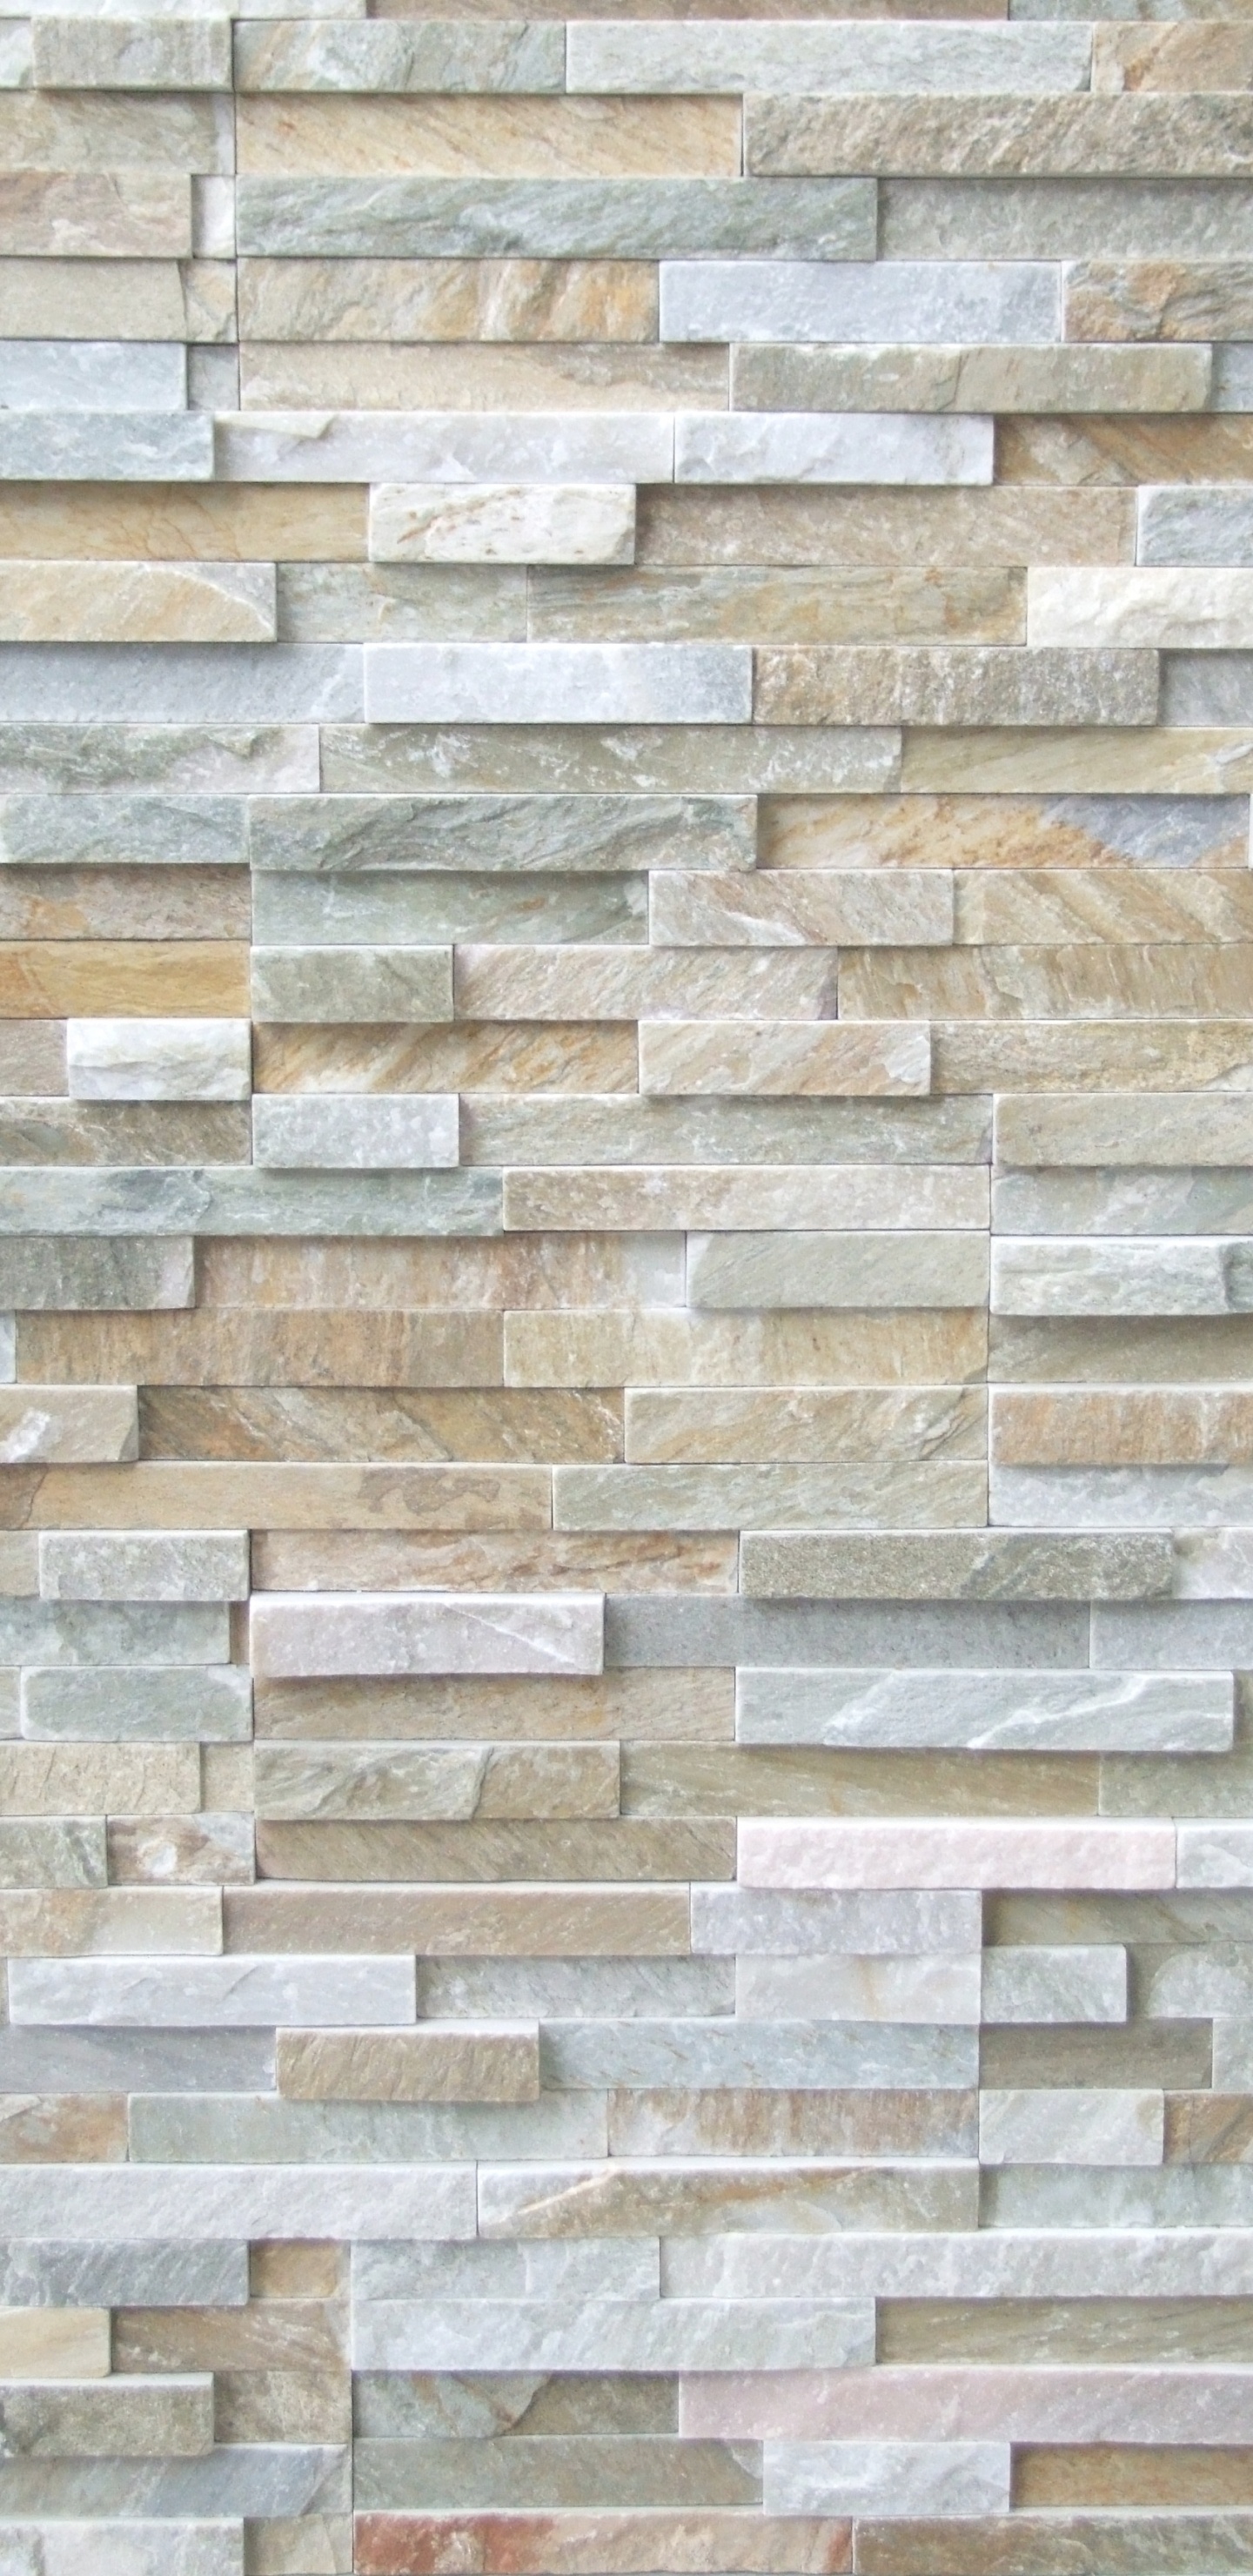 石饰面, 瓷砖, 石壁, 石板, 砌砖 壁纸 1440x2960 允许